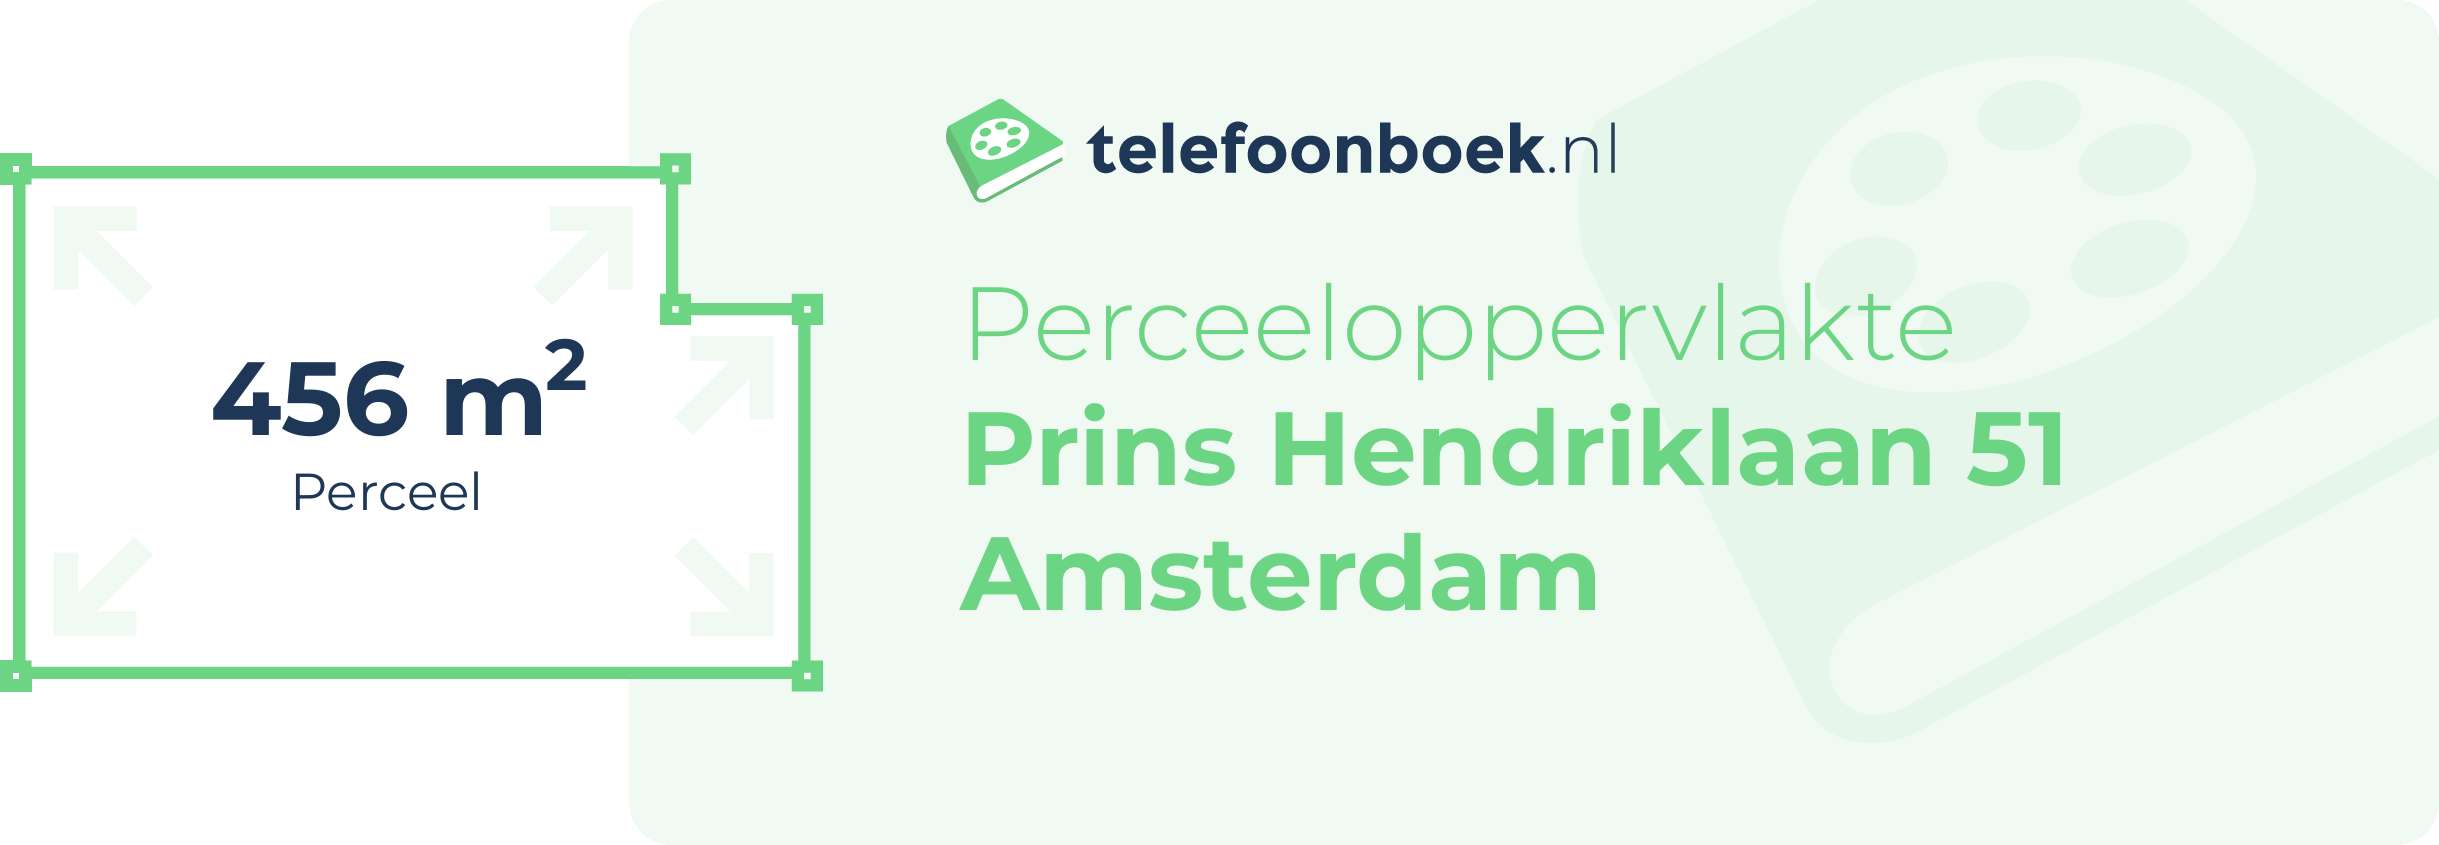 Perceeloppervlakte Prins Hendriklaan 51 Amsterdam